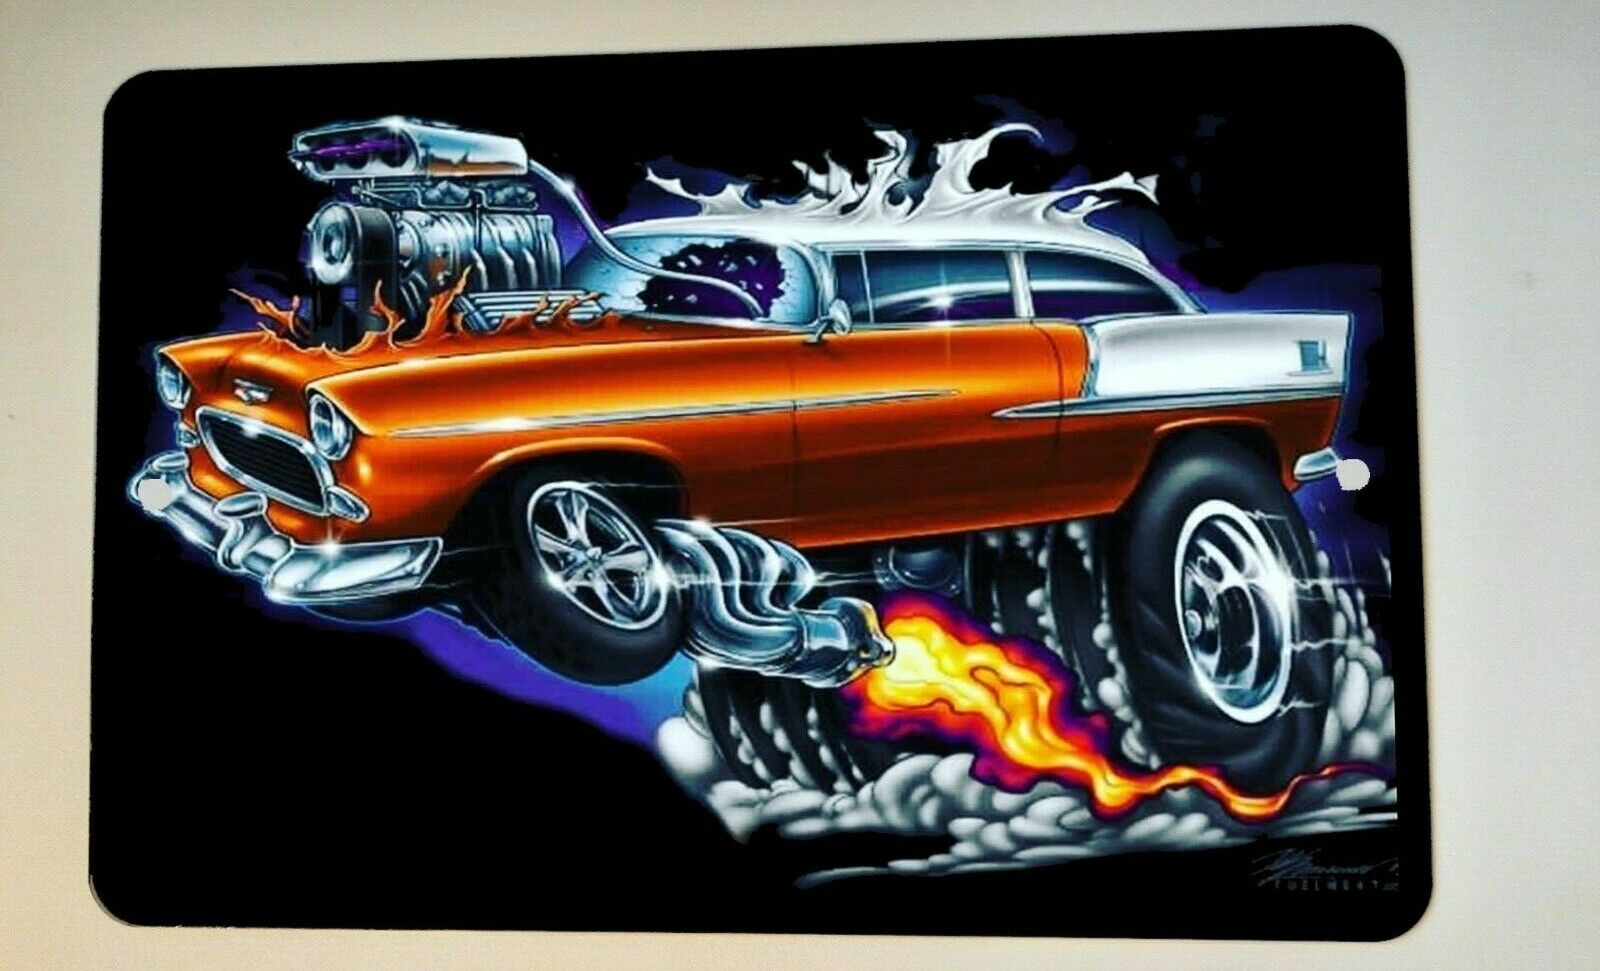 Hot Rod Wheelie Gasser Street Car Artwork 8x12 Metal Wall Sign